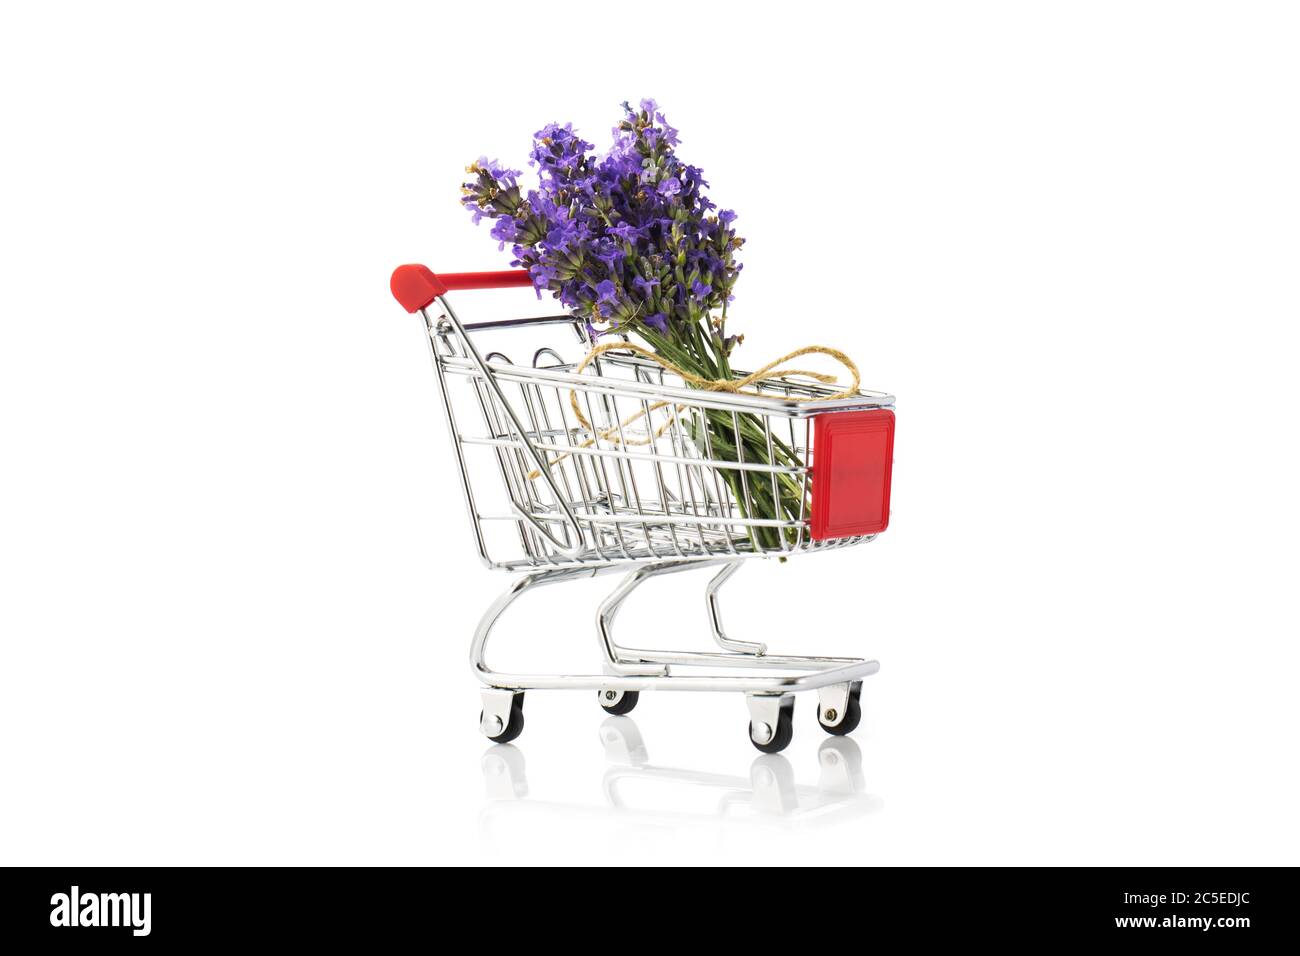 Magnifique bouquet biologique de fleur de lavande dans une voiture de shopping isolée sur fond blanc Banque D'Images